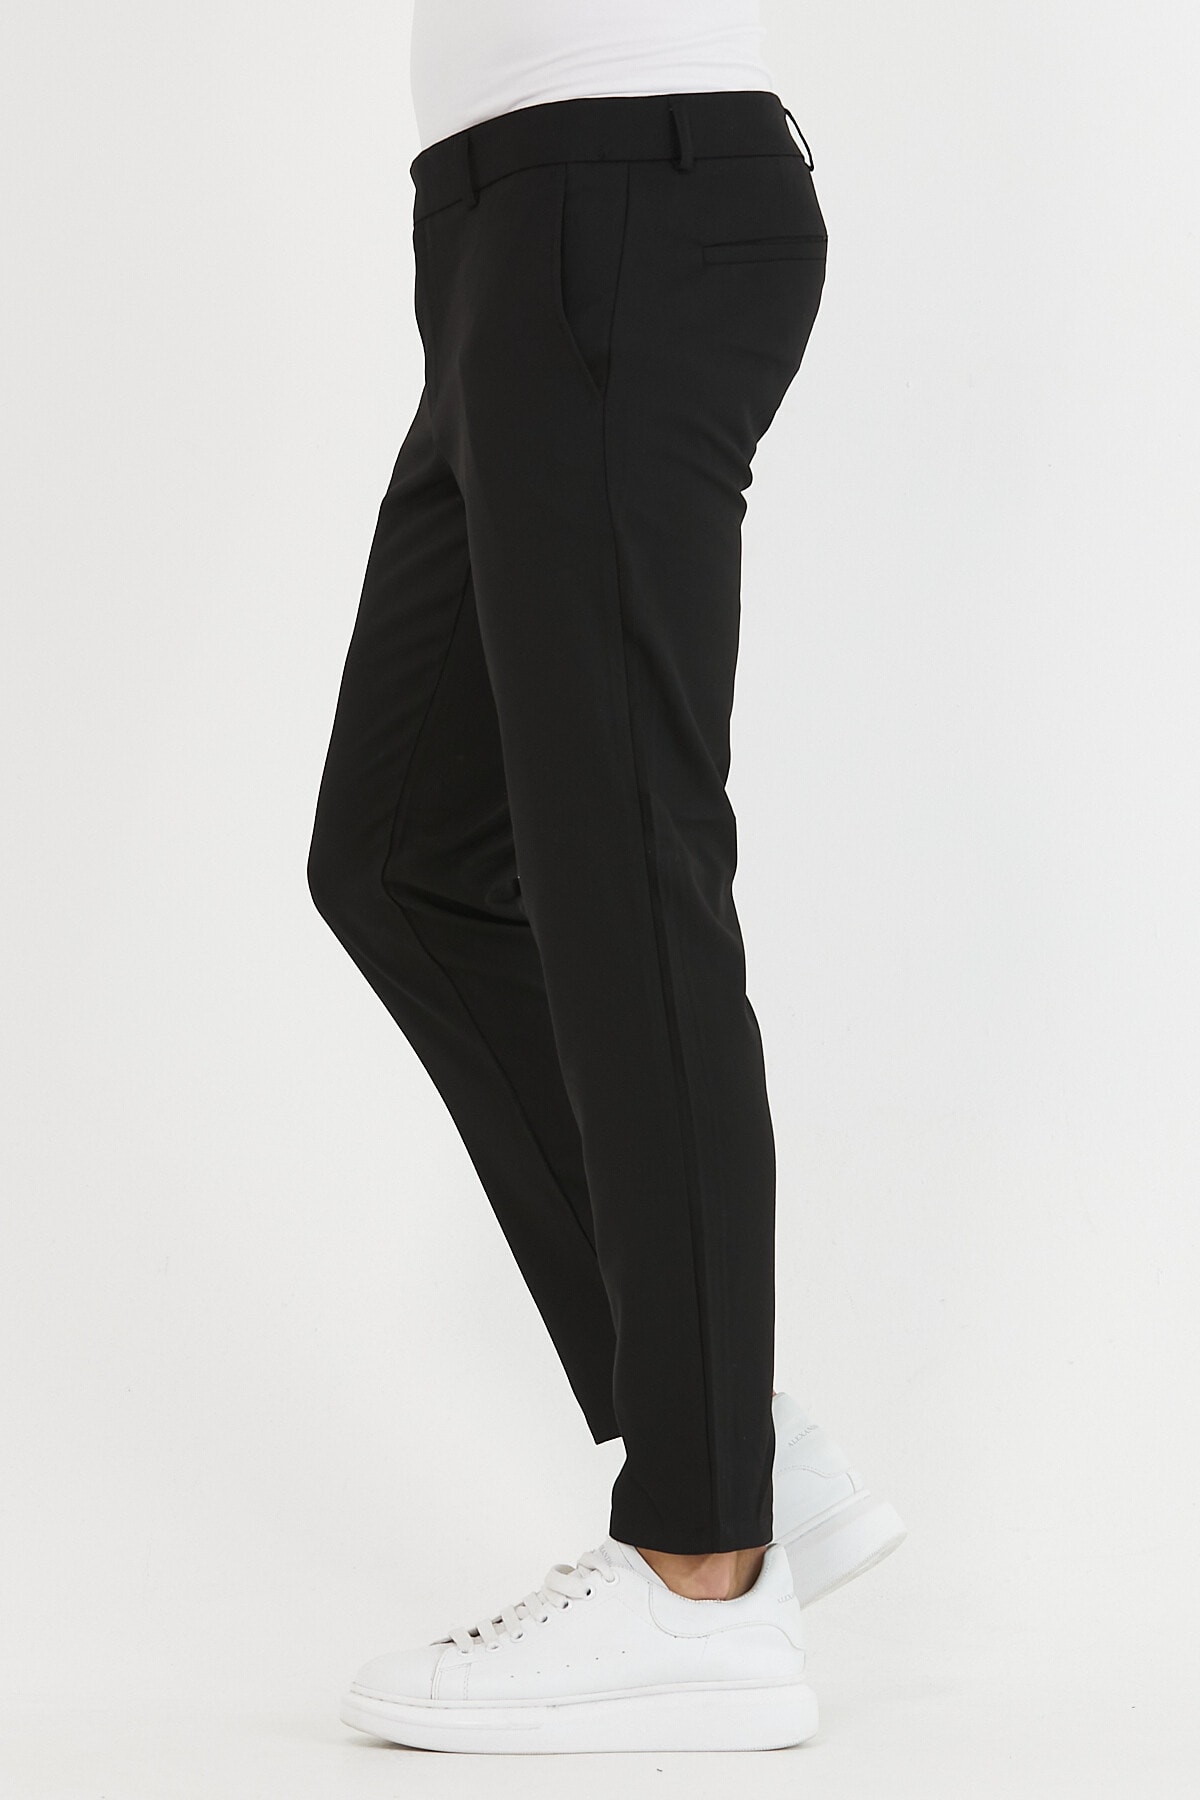 Erkek Siyah Renk Italyan Kesim Kaliteli Esnek Likralı Bilek Boy Kumaş Pantolon